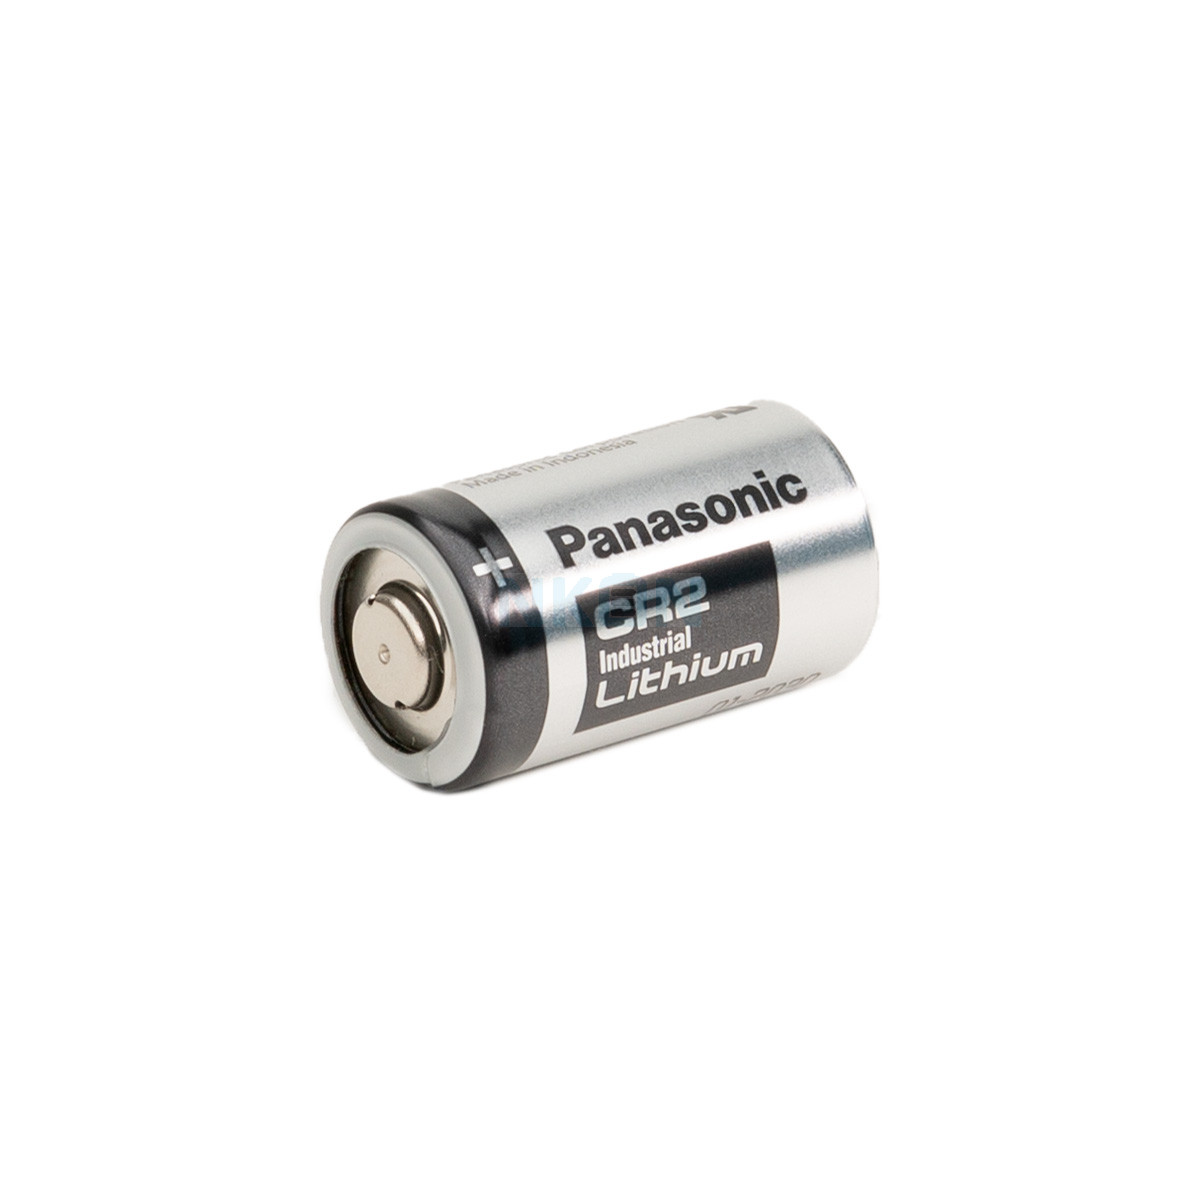 Accessoires Energie - Pile Lithium CR2 3V Panasonic ou Varta